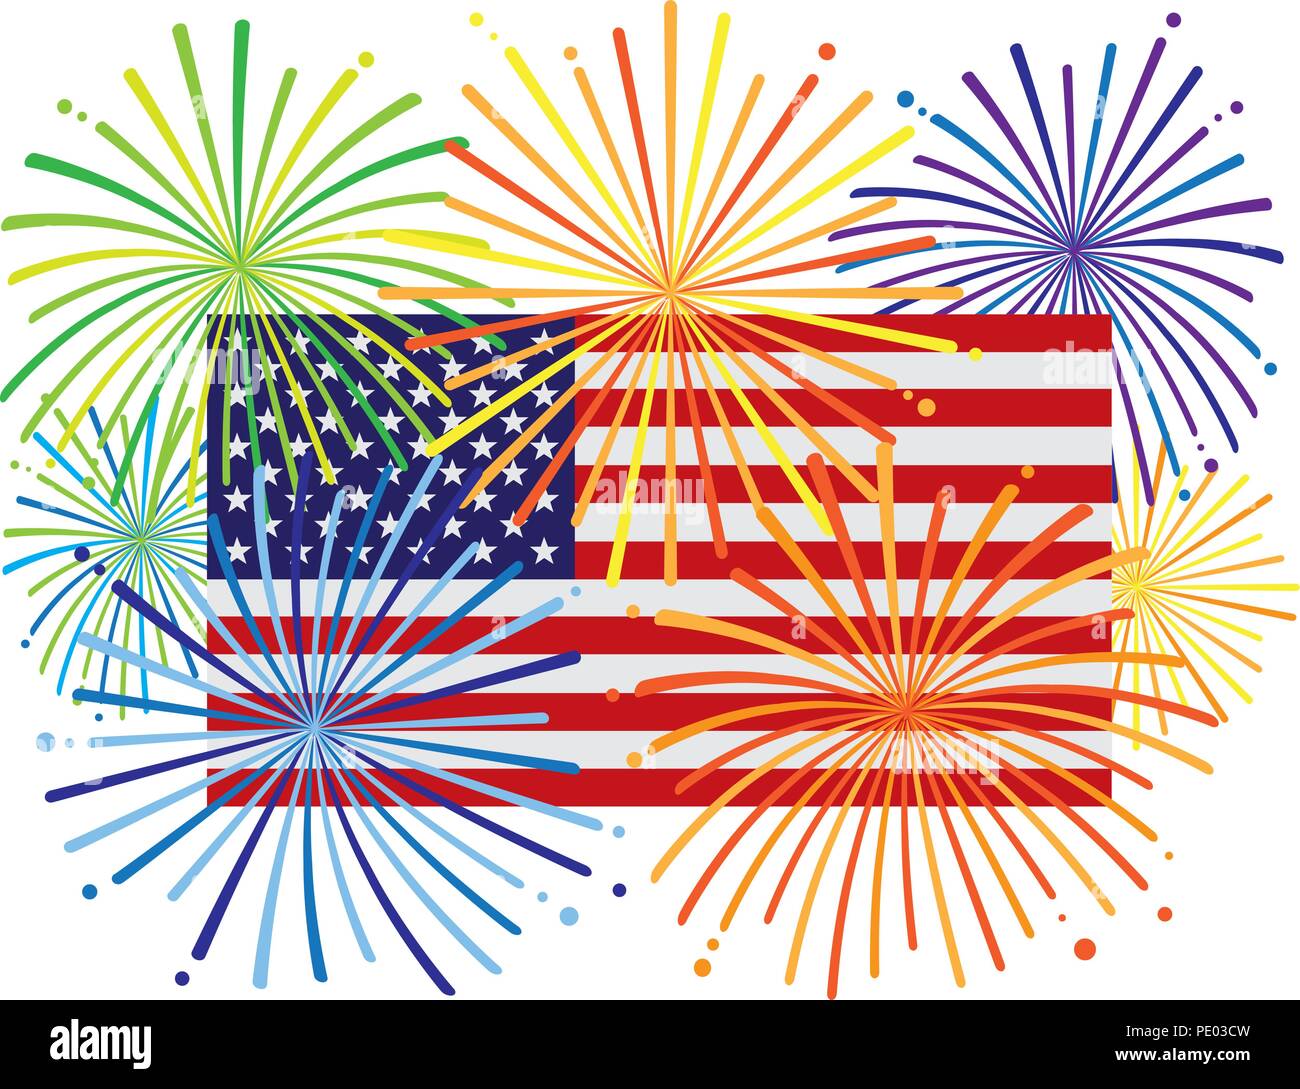 Fuegos artificiales sobre USA bandera americana para Año Nuevo o el 4 de julio de celebración del Día de la independencia ilustración en color Ilustración del Vector